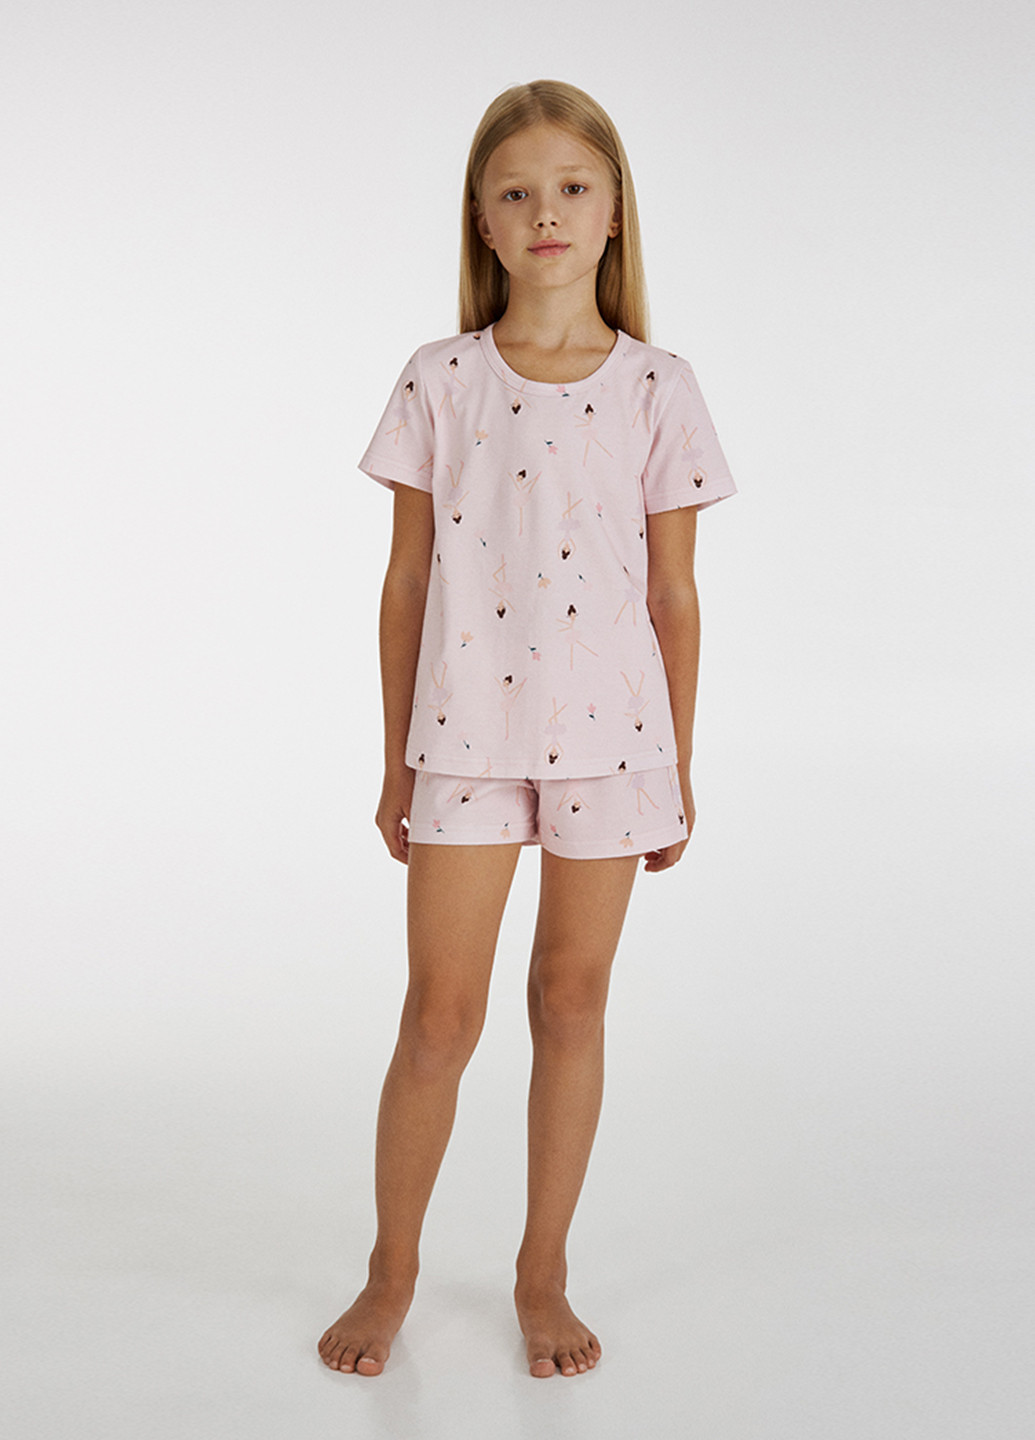 Светло-розовая всесезон пижама (футболка, шорты) футболка + шорты Ellen